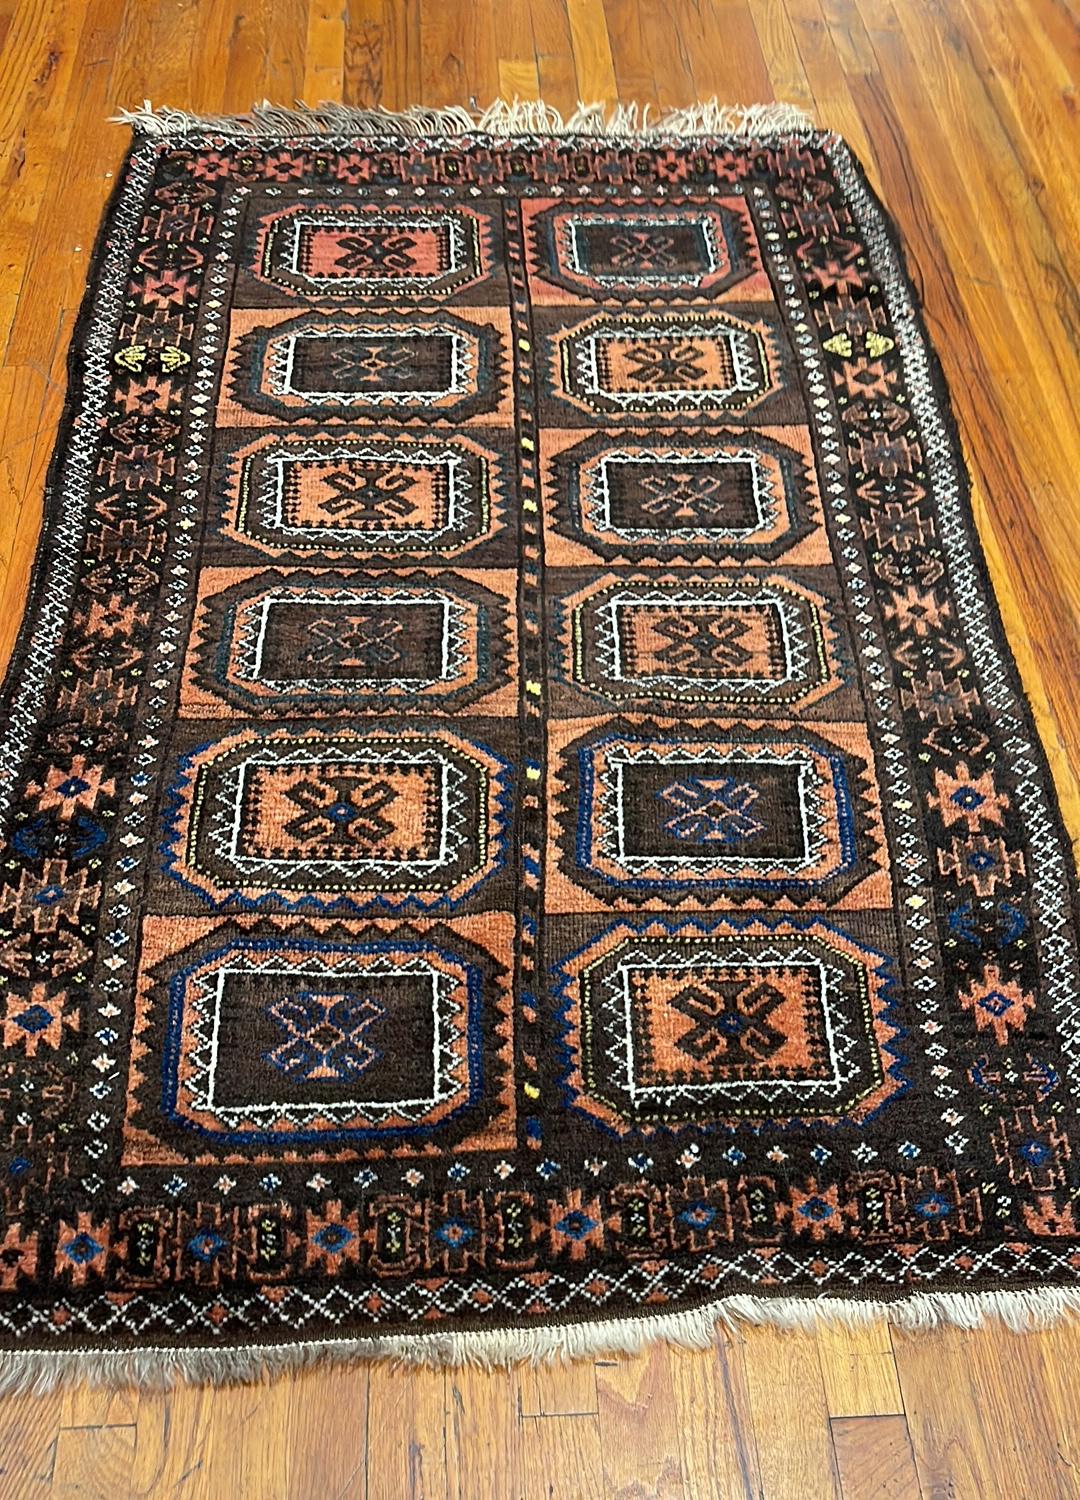 Ce tapis est un tapis afghan, c'est-à-dire un tapis d'atelier tissé par une maison de tissage en Afghanistan. L'Afghanistan a une riche histoire en matière de fabrication de tapis. Le motif de cette pièce est un motif tribal allover. Les couleurs de